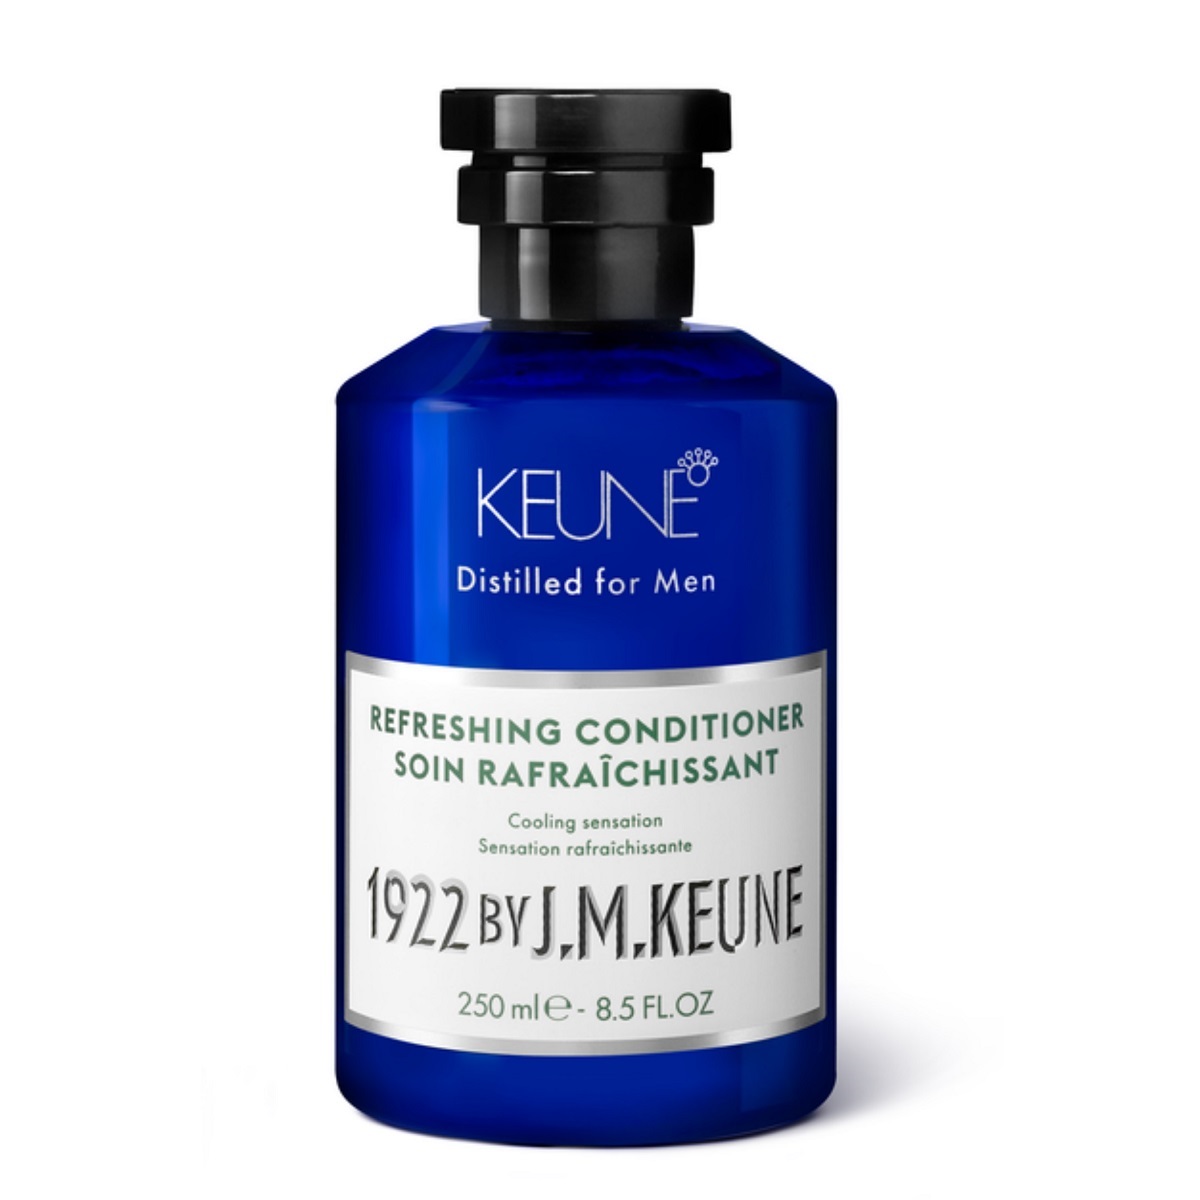 Keune Освежающий кондиционер Refreshing Conditioner, 250 мл (Keune, 1922 by J.M. Keune) epic dental жевательная резинка с перечной мятой 50 штук